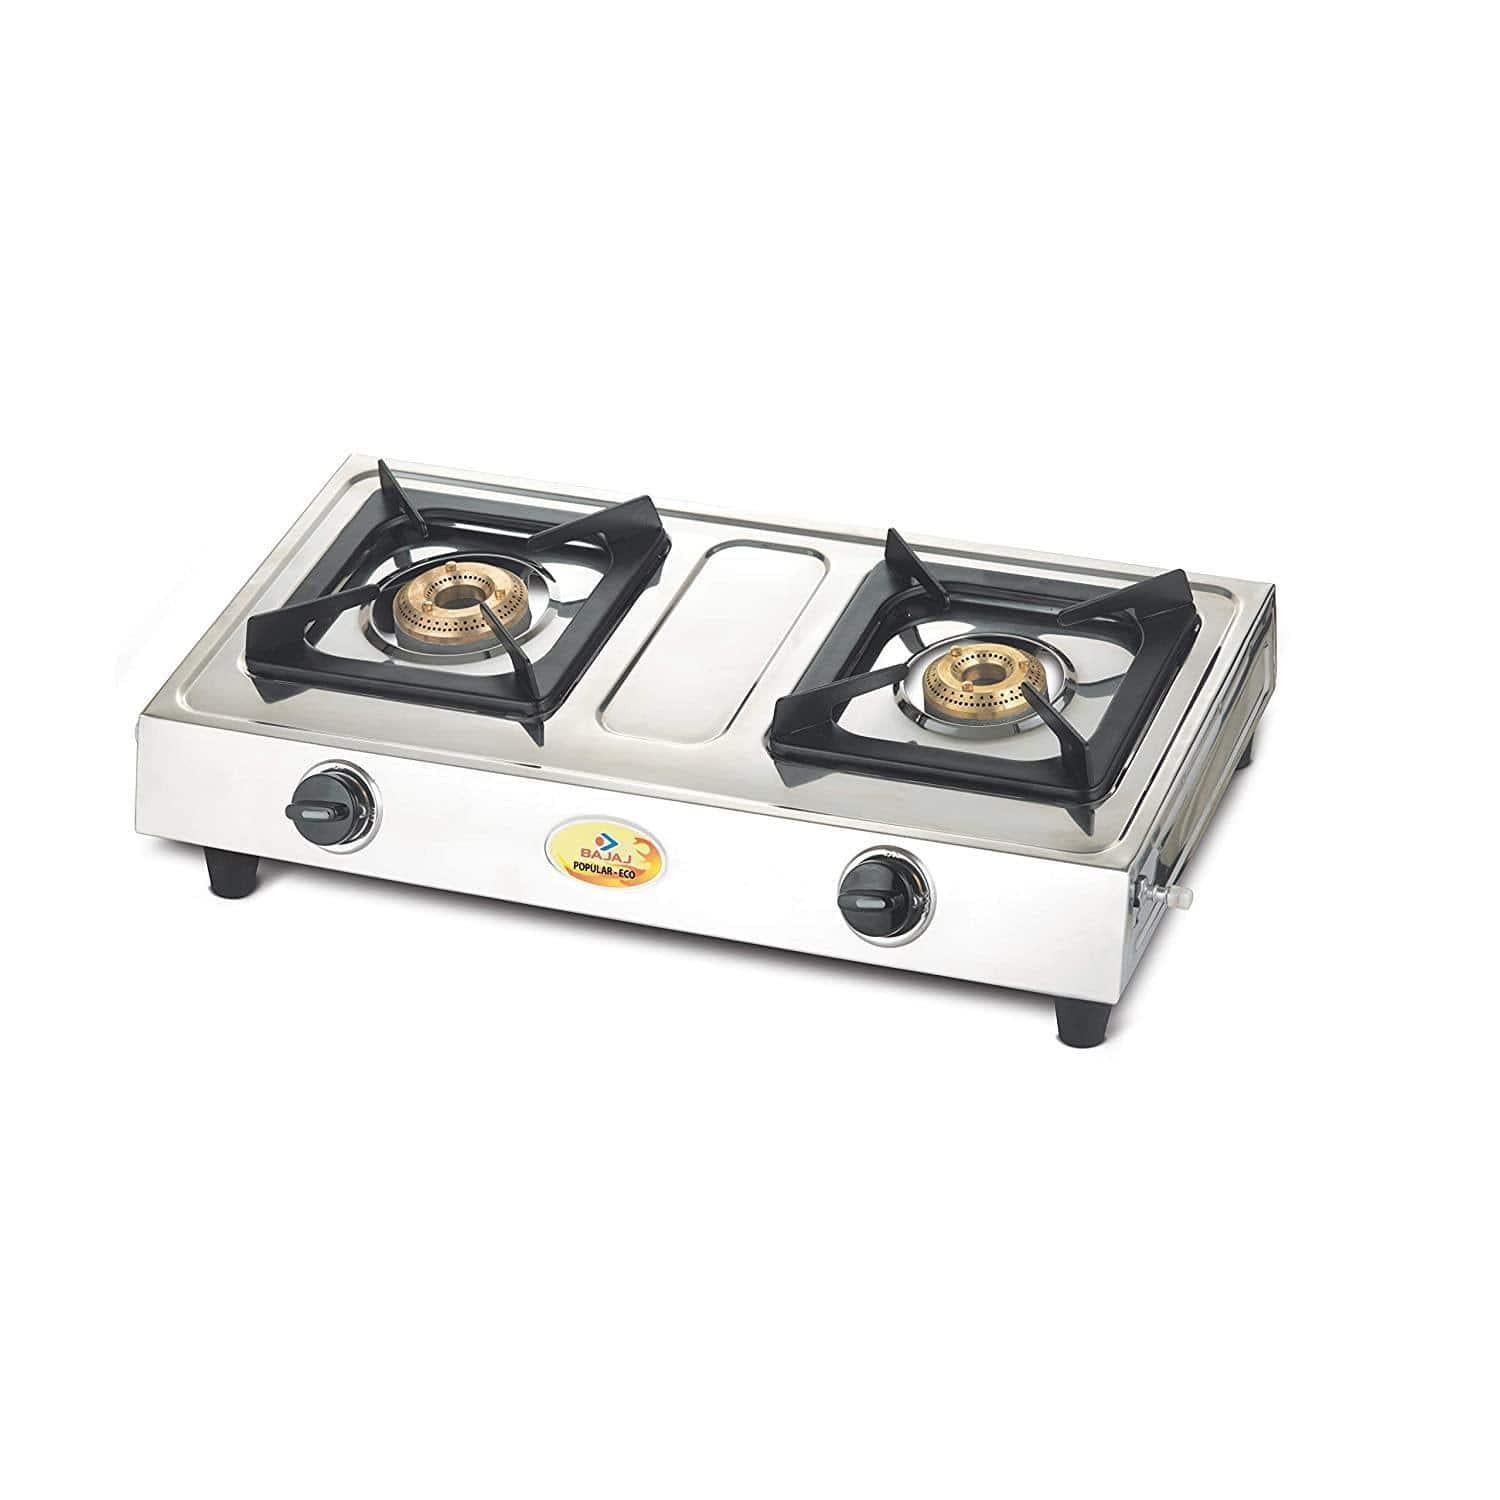 Bajaj Popular Eco, 2-Burner Stainless Steel-Home & Kitchen Appliances-dealsplant